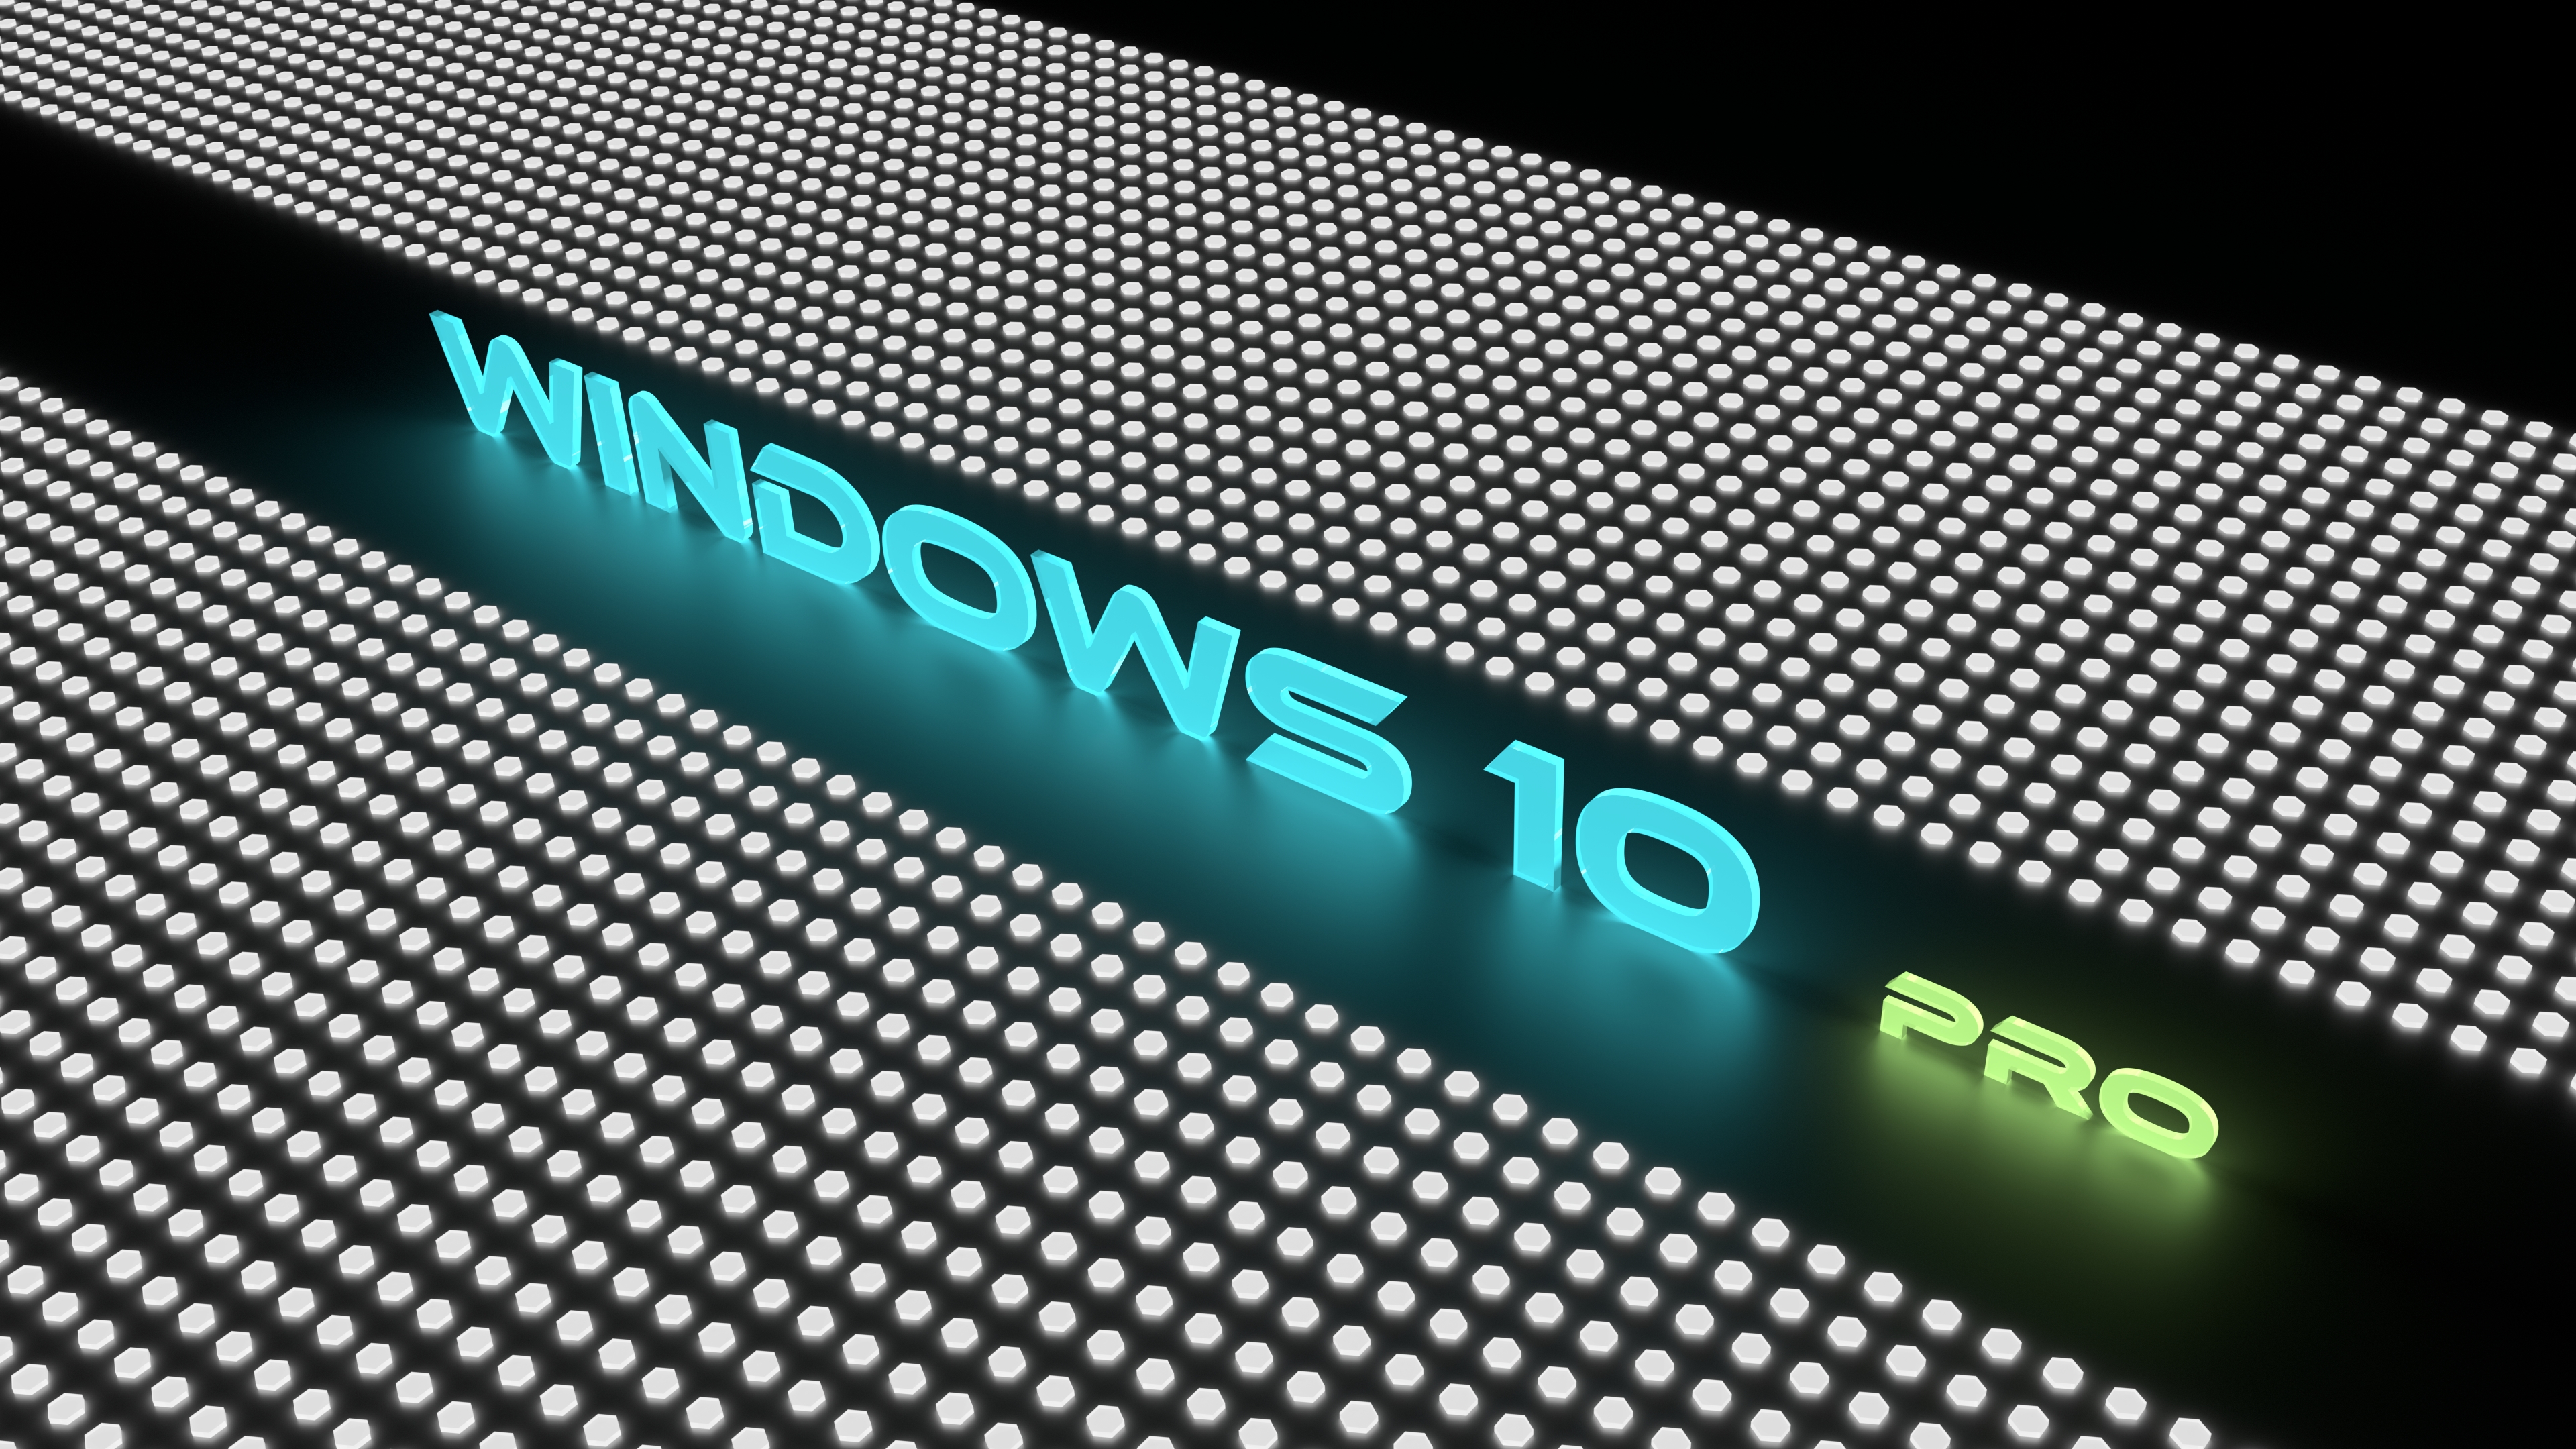 windows 10, technology, windows 2160p